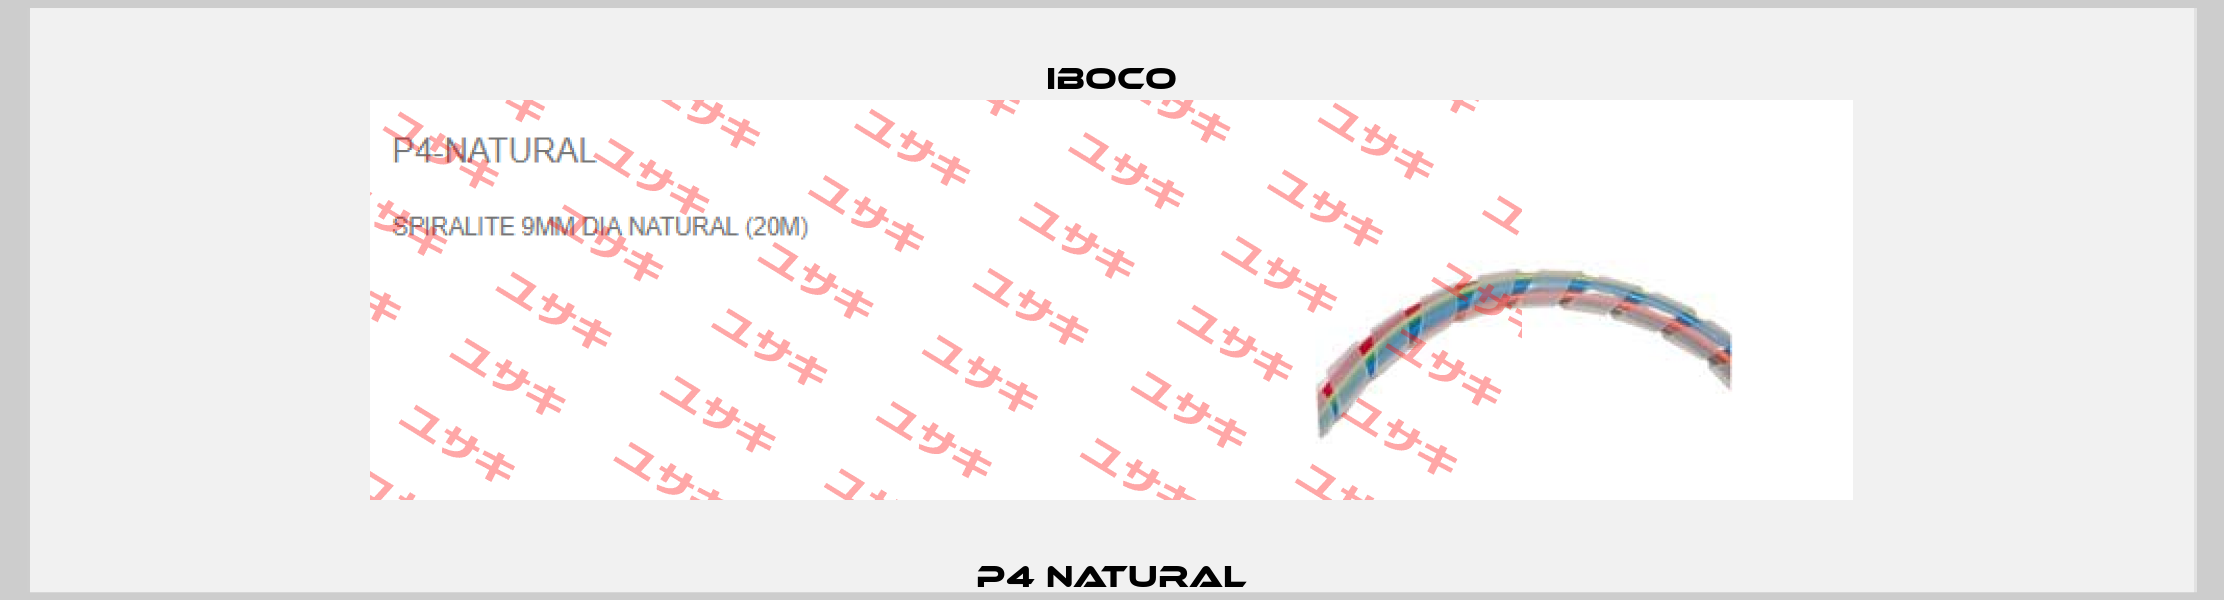 P4 Natural Iboco